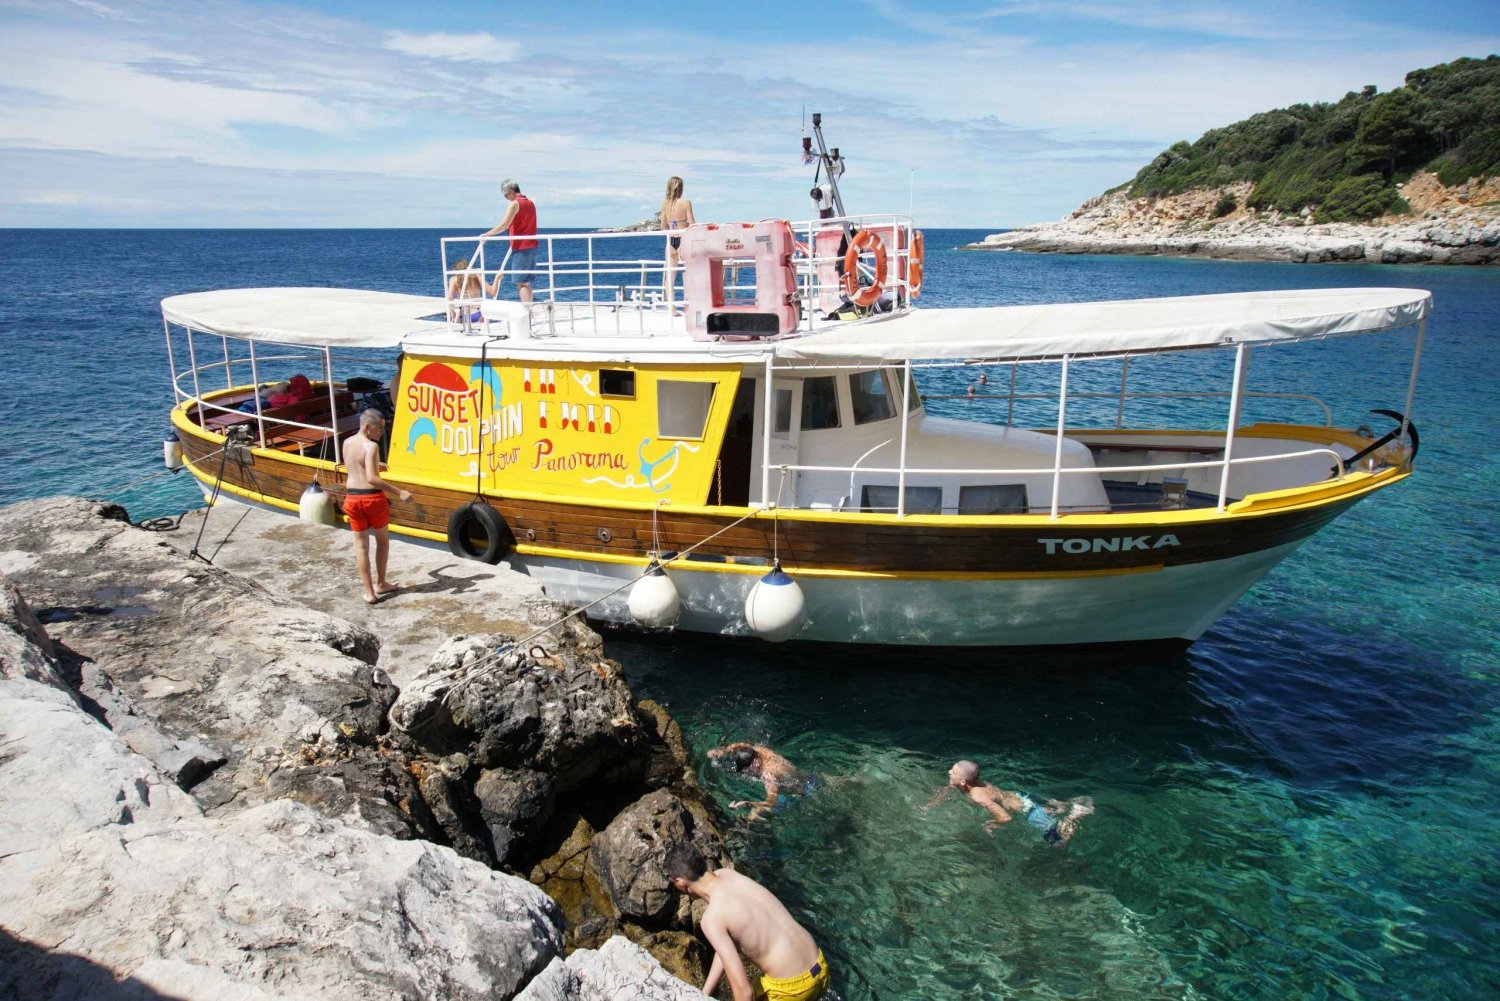 Tour en bateau des îles de Rovinj avec baignade